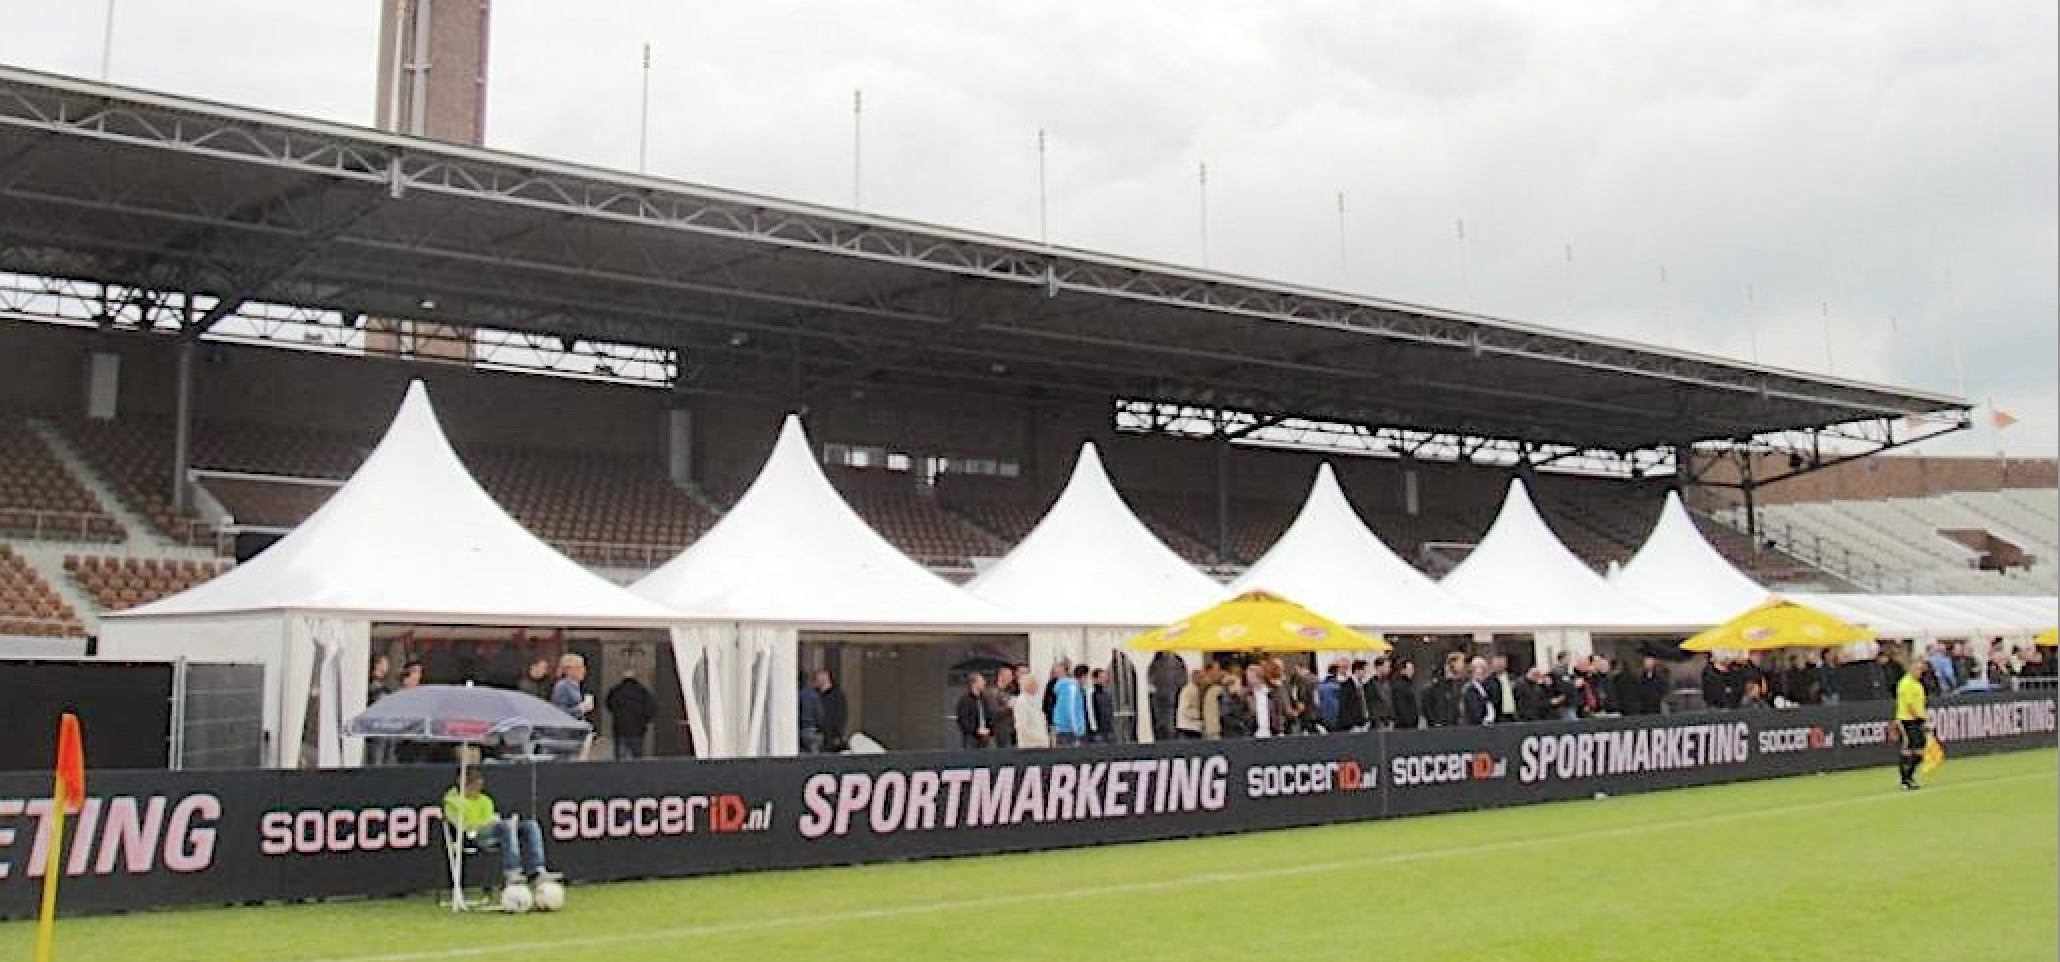 Pagodenzelte von Zeltverleih Intersettle - VIP-Pagoden im Stadion für Sportveranstaltung